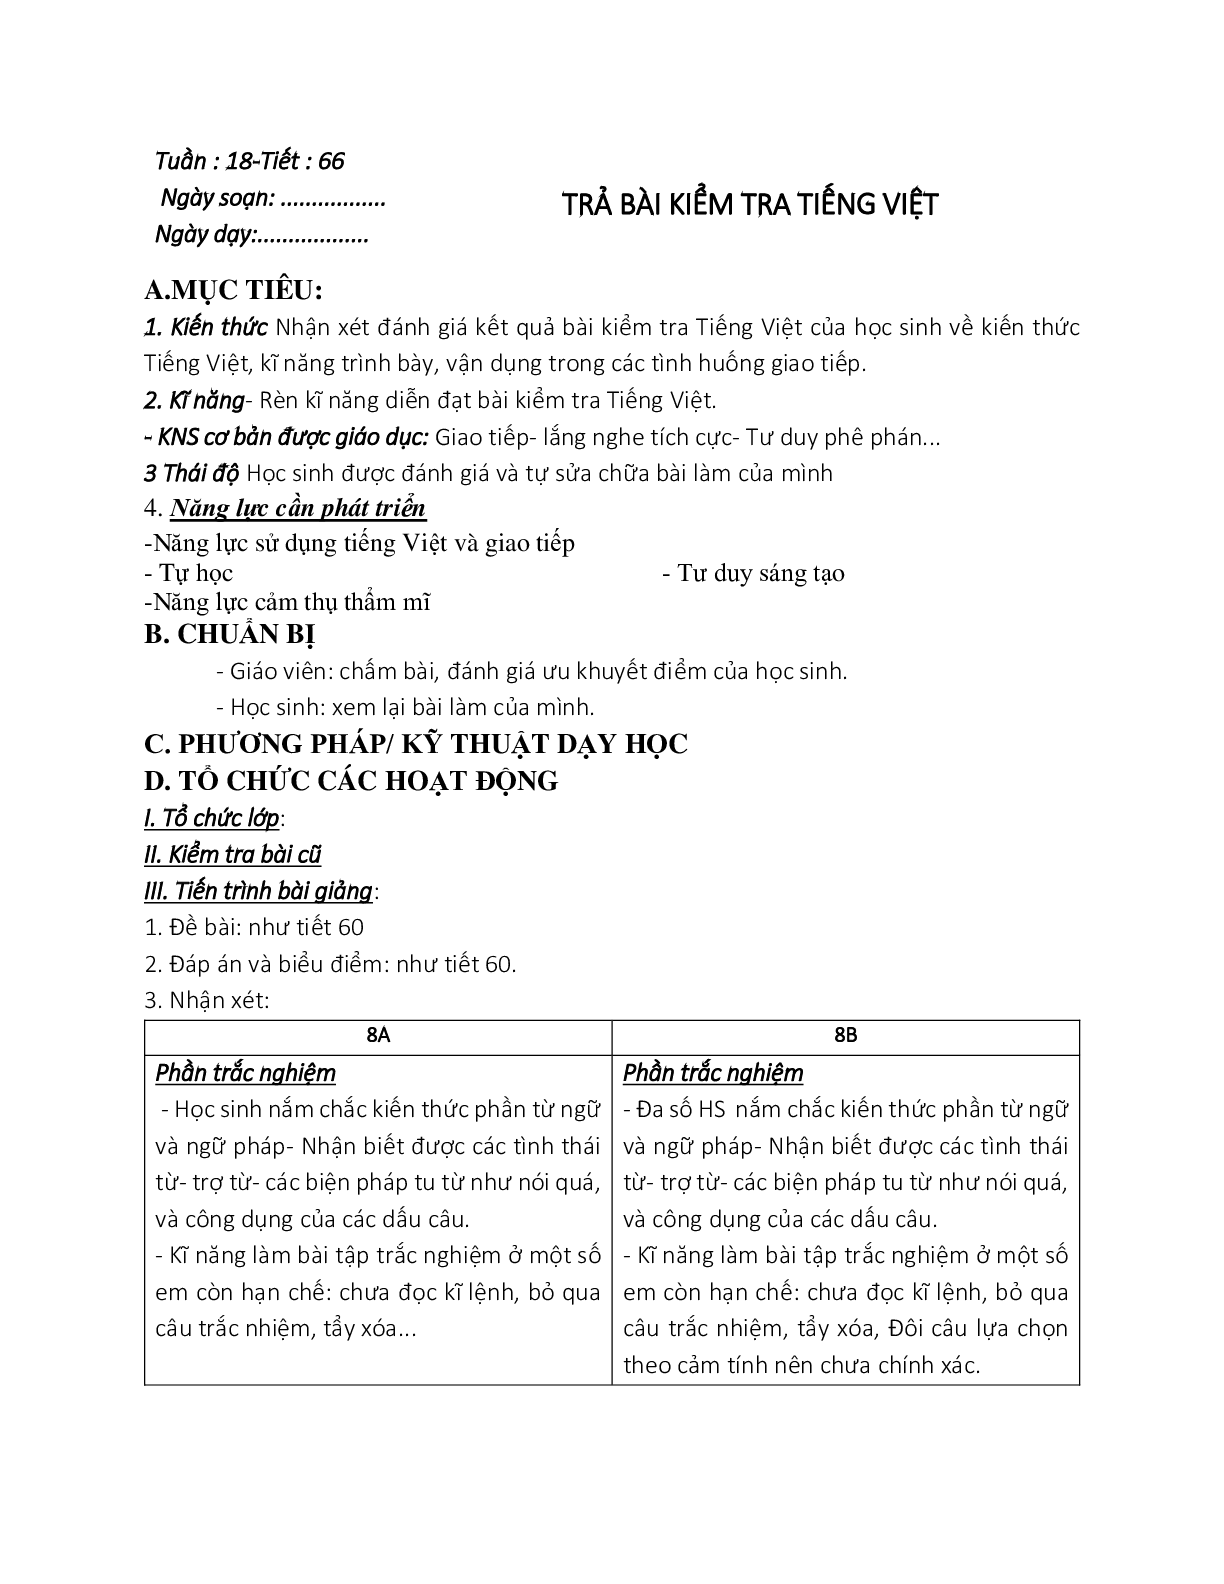 Giáo án ngữ văn lớp 8 Tuần 18 Tiết 66: Trả bài kiểm tra tiếng việt (trang 1)